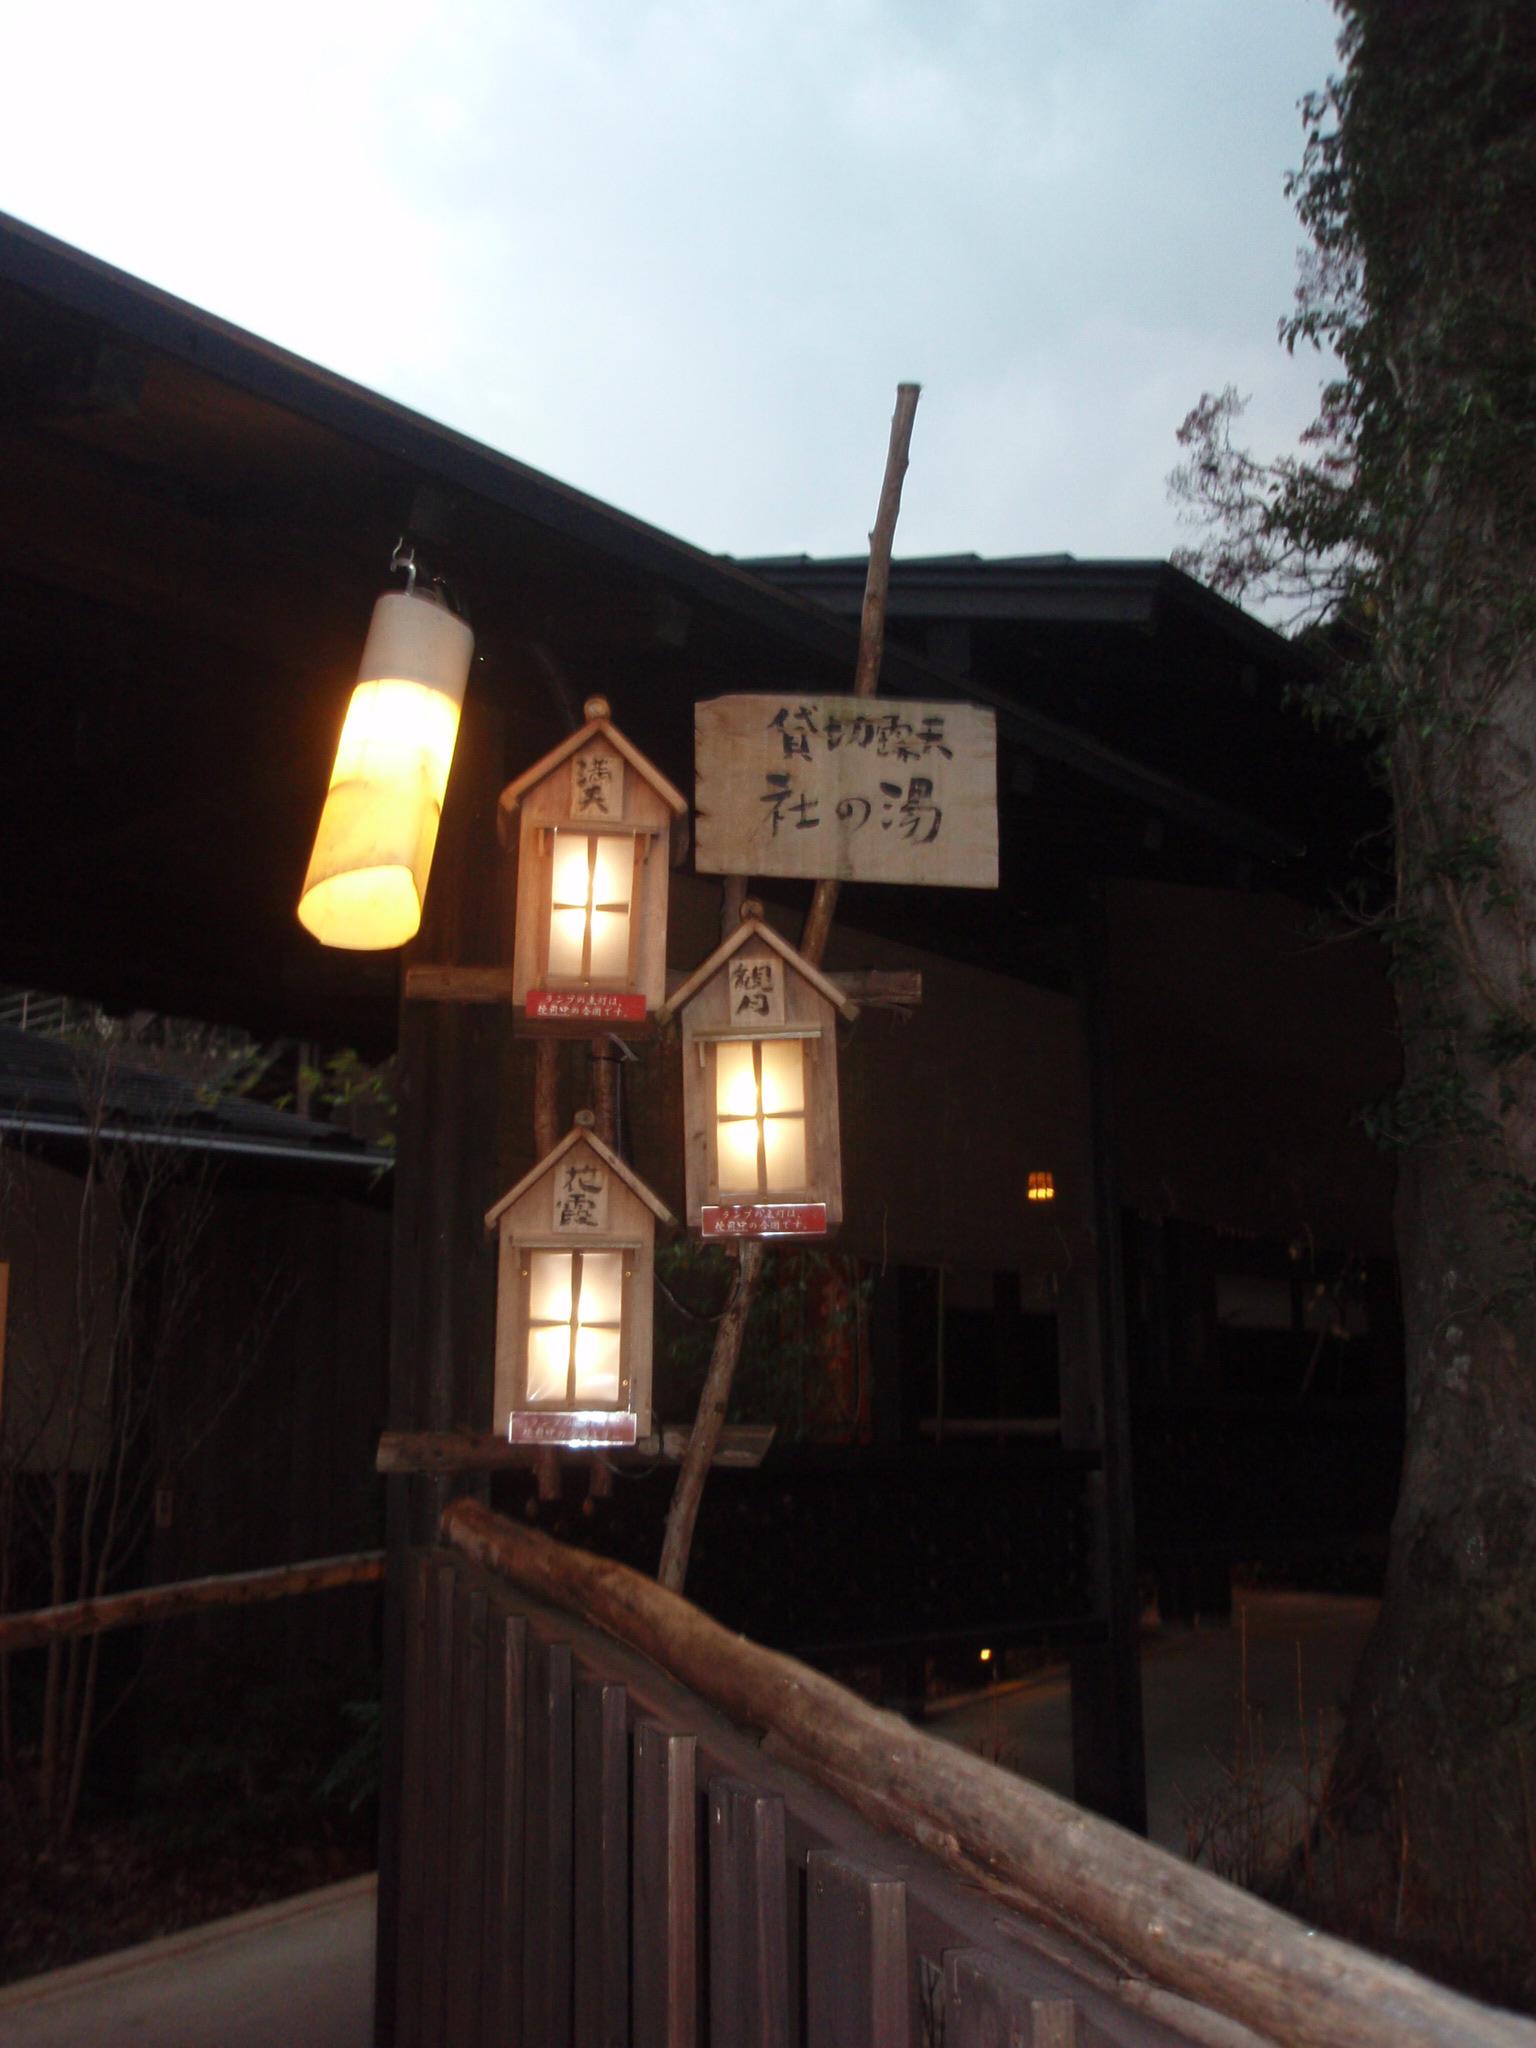 再会を兼ねて 1年振りの 季の湯 雪月花 へ ハプニングあり 強羅温泉 神奈川県 の旅行記 ブログ By 犬 のおまわりさんさん フォートラベル